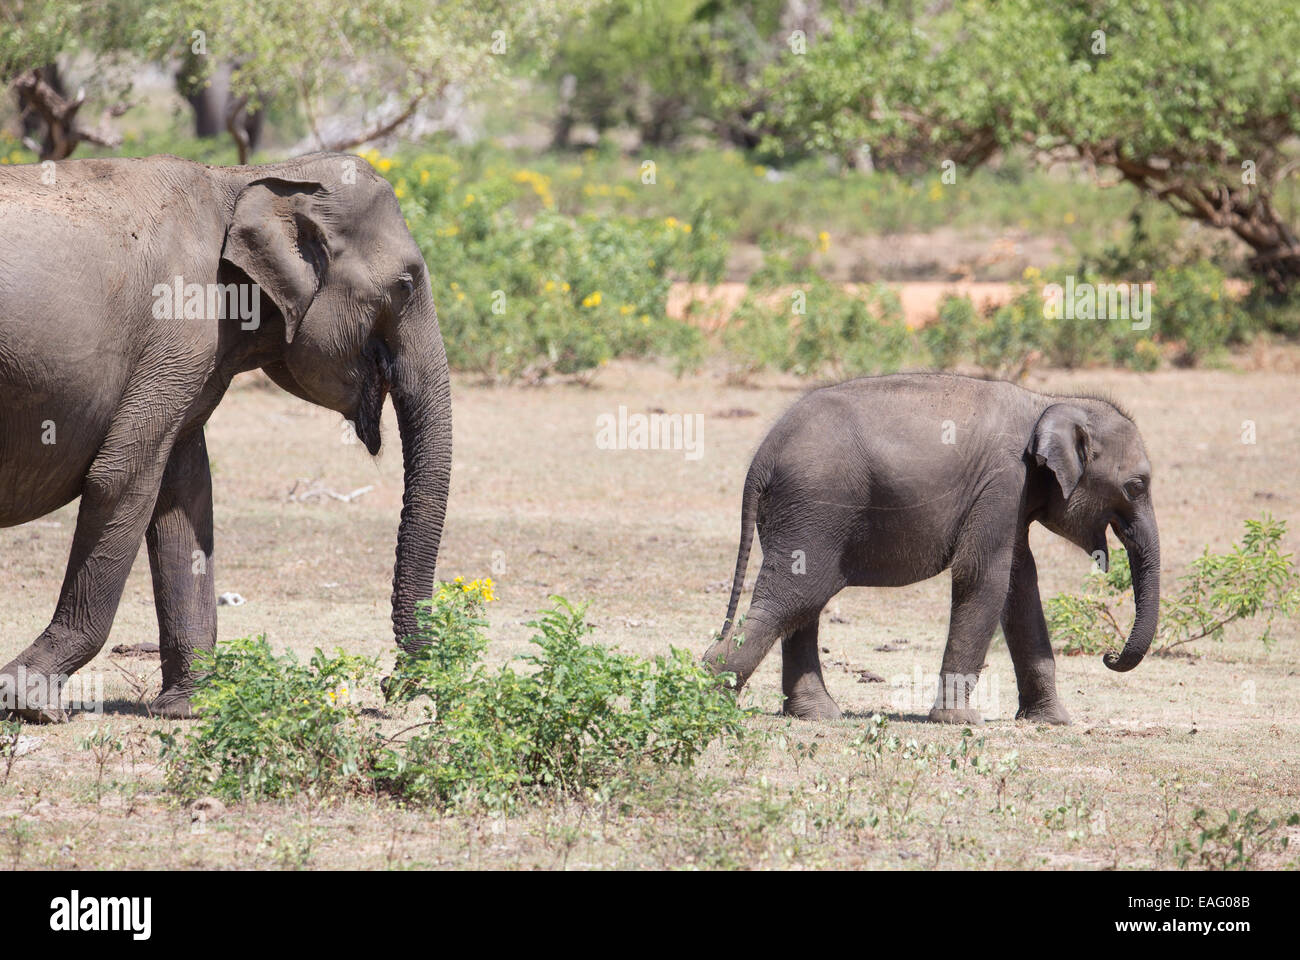 La mère et l'enfant éléphant sri-lankais (Elephas maximus maximus) une sous-espèce de l'éléphant d'Asie, parc national de Yala, au Sri Lanka Banque D'Images